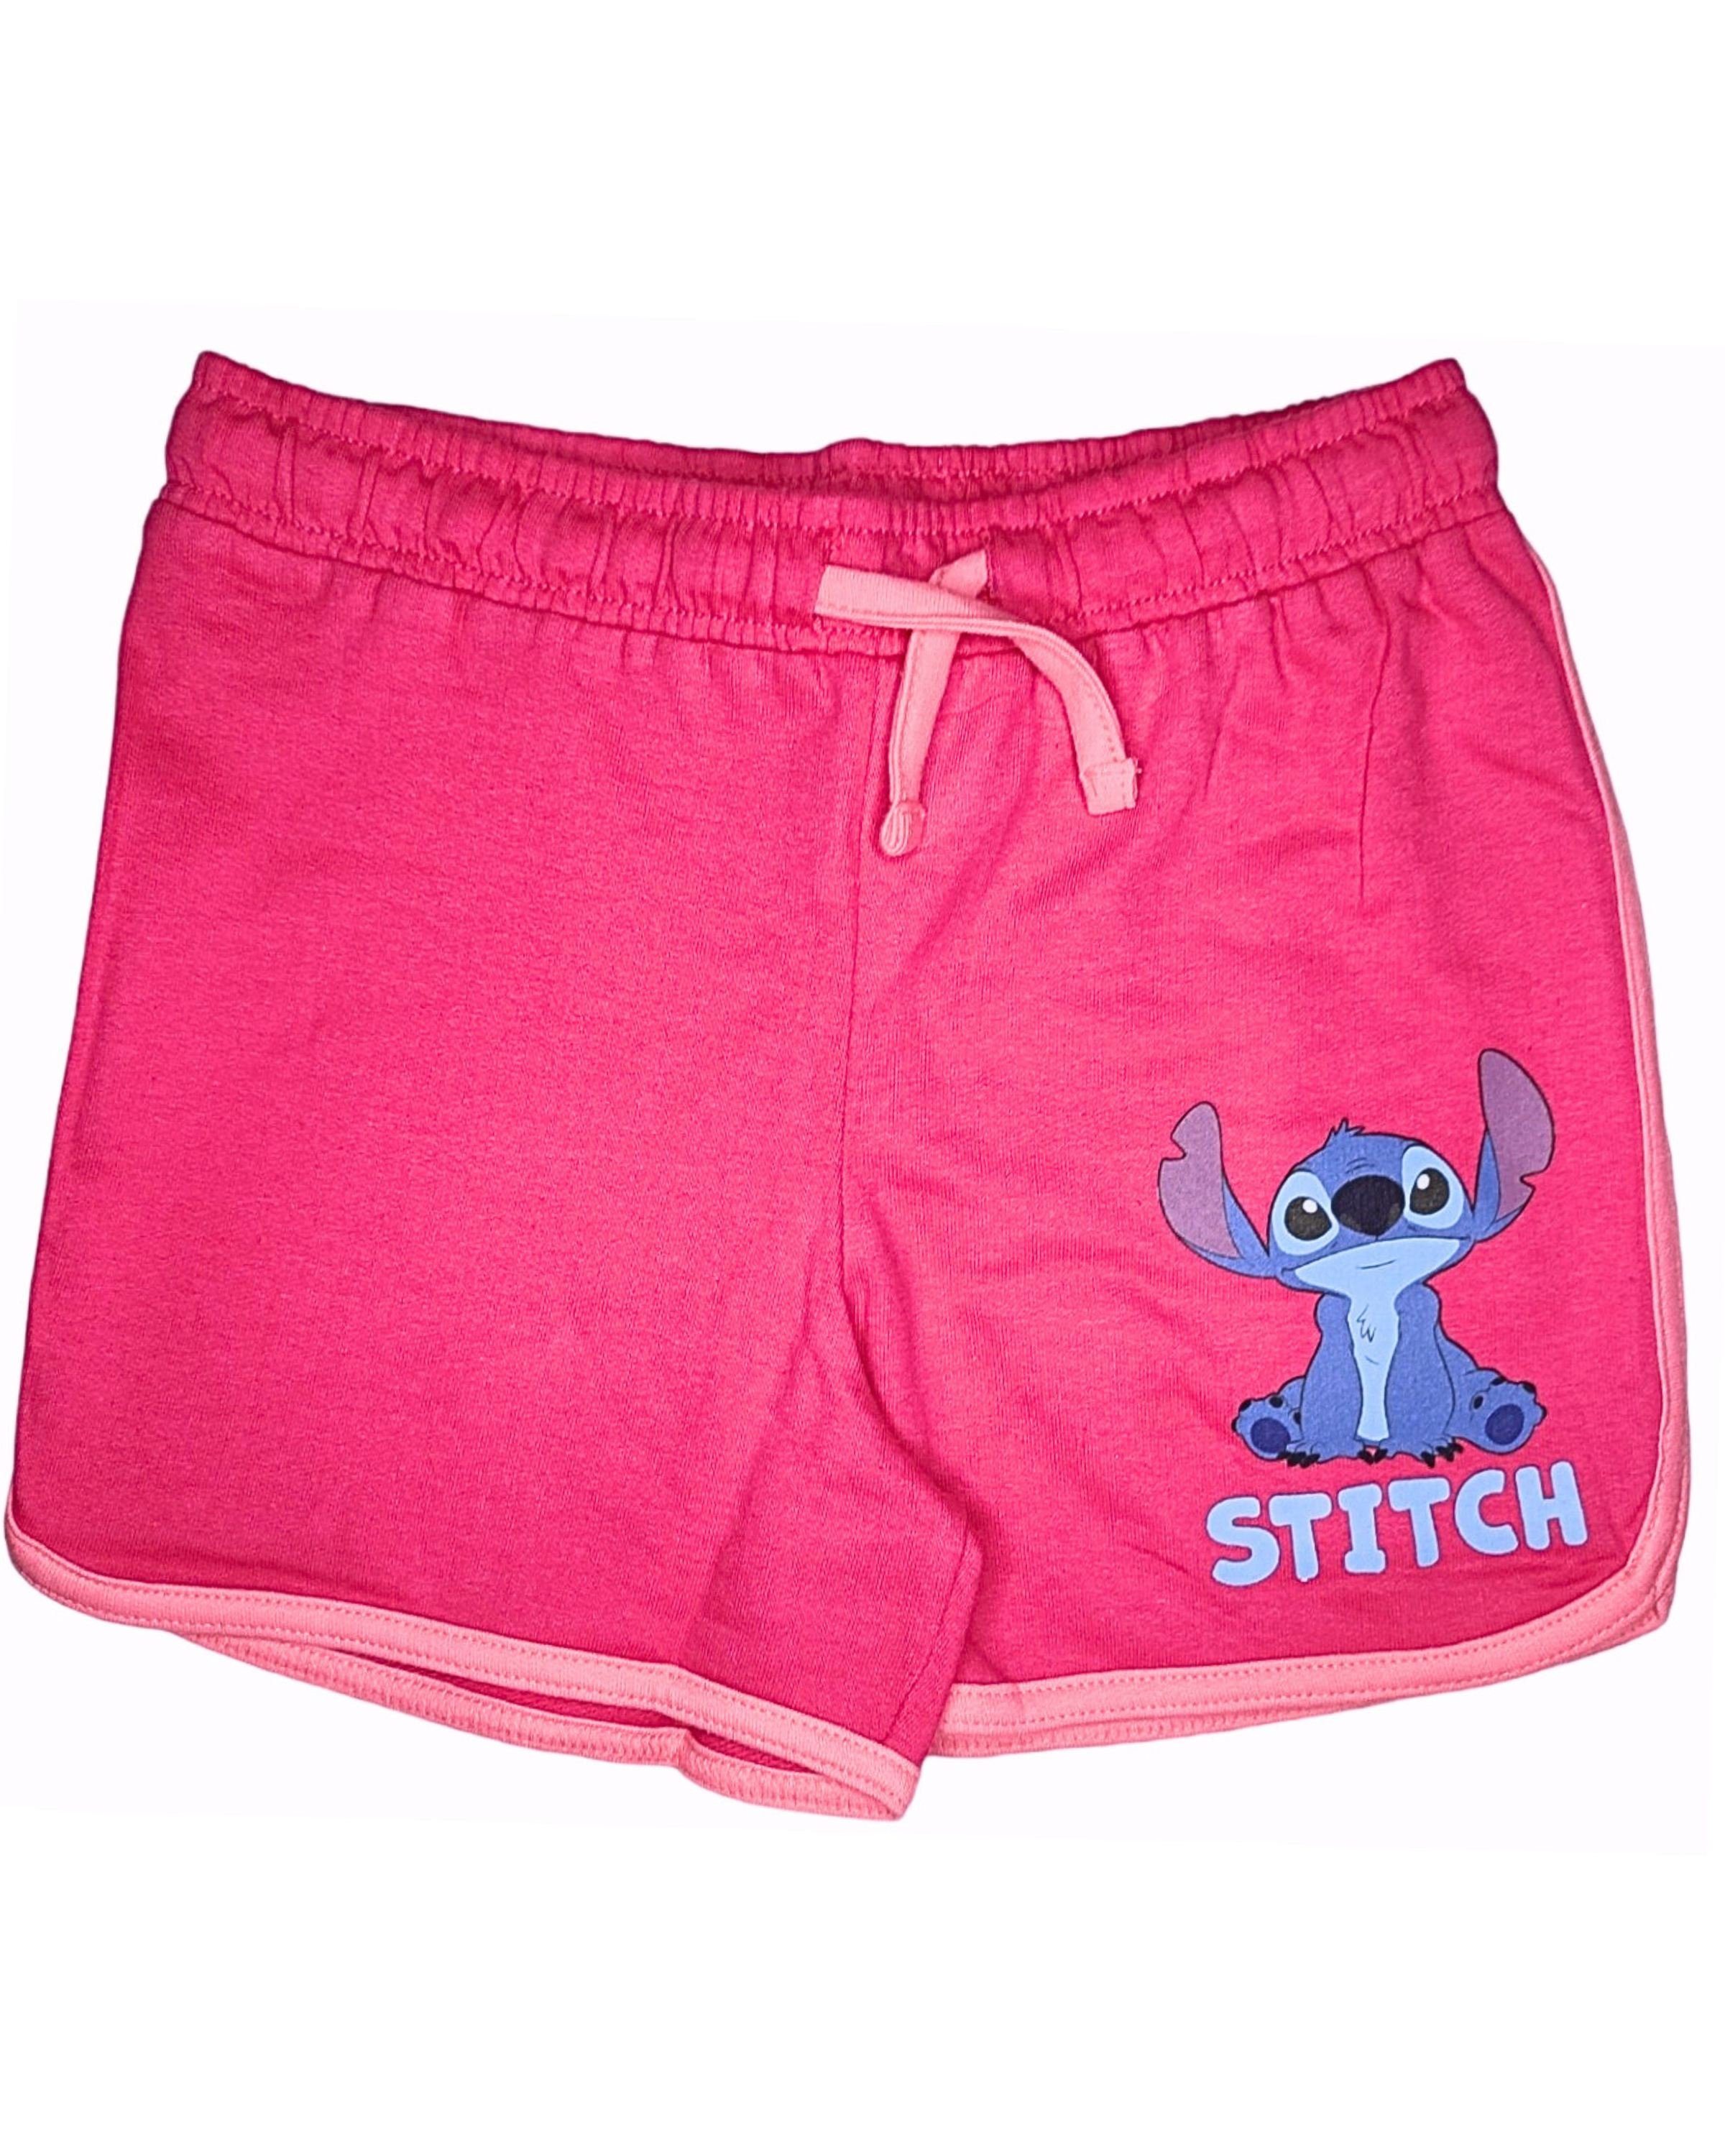 Lilo & Stitch Shorts Mädchen kurze Hose aus Baumwolle Gr. 104 - 152 cm Dunkelpink